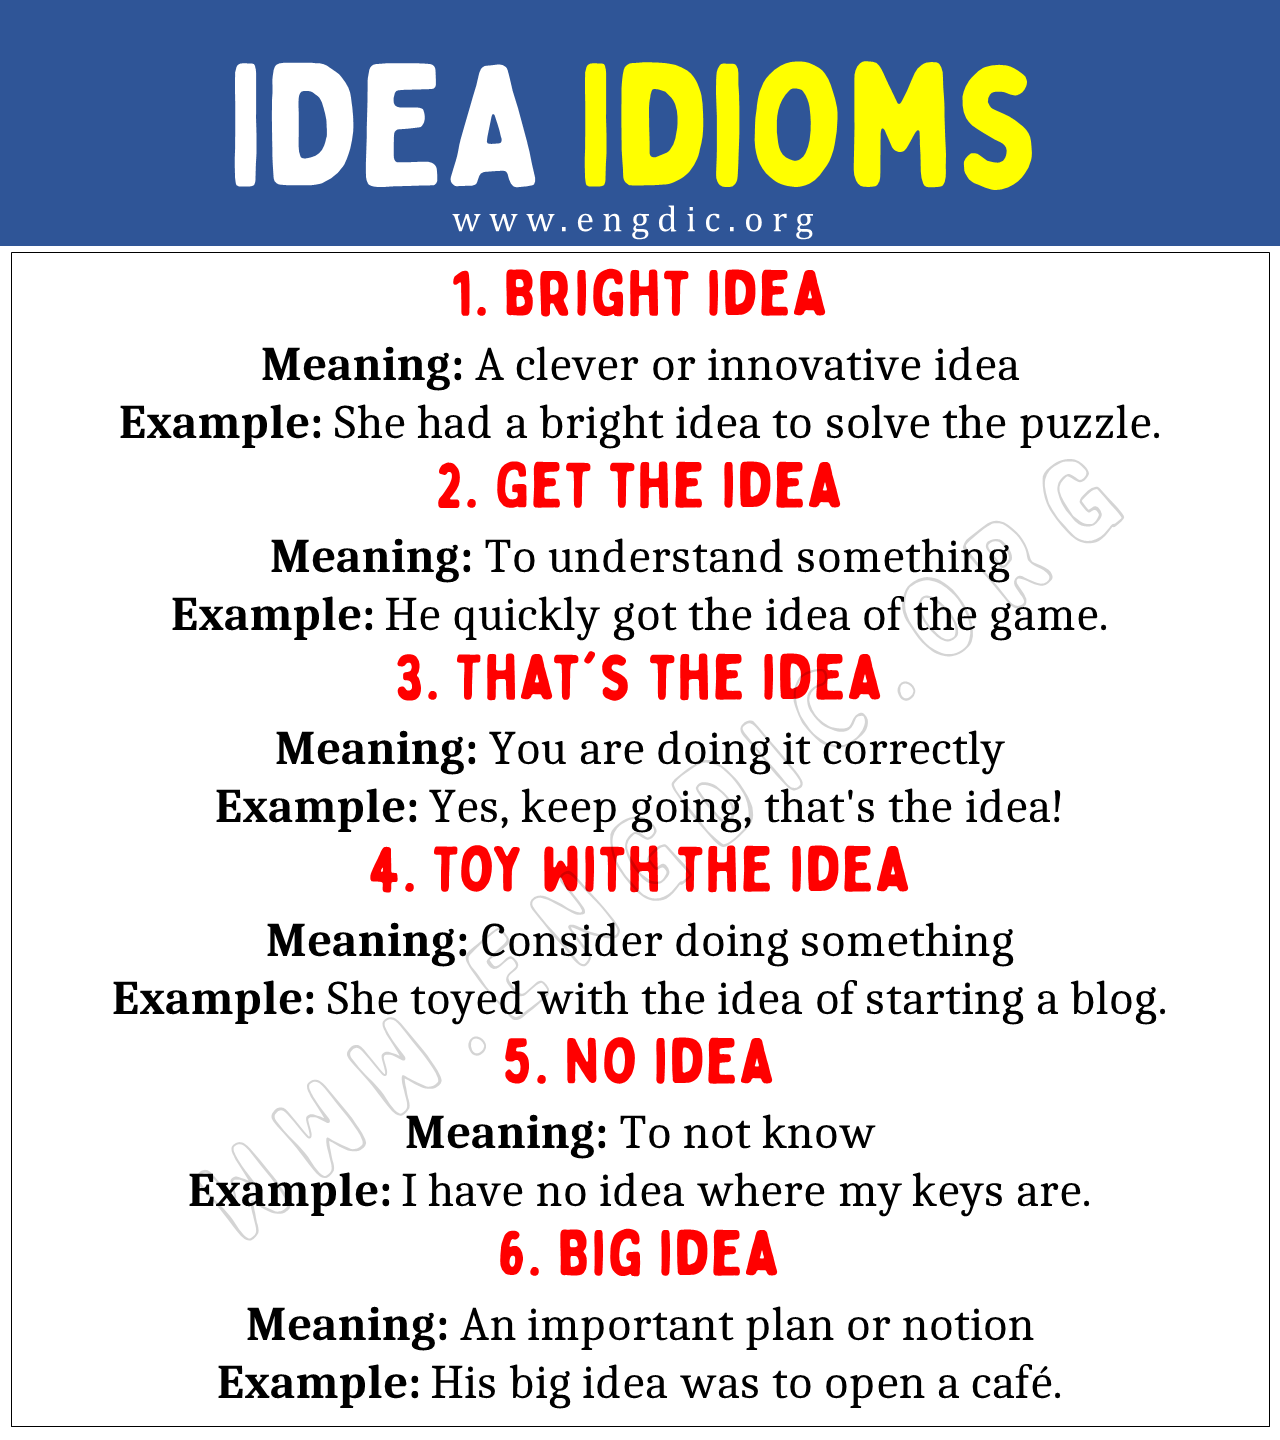 IDEA Idioms